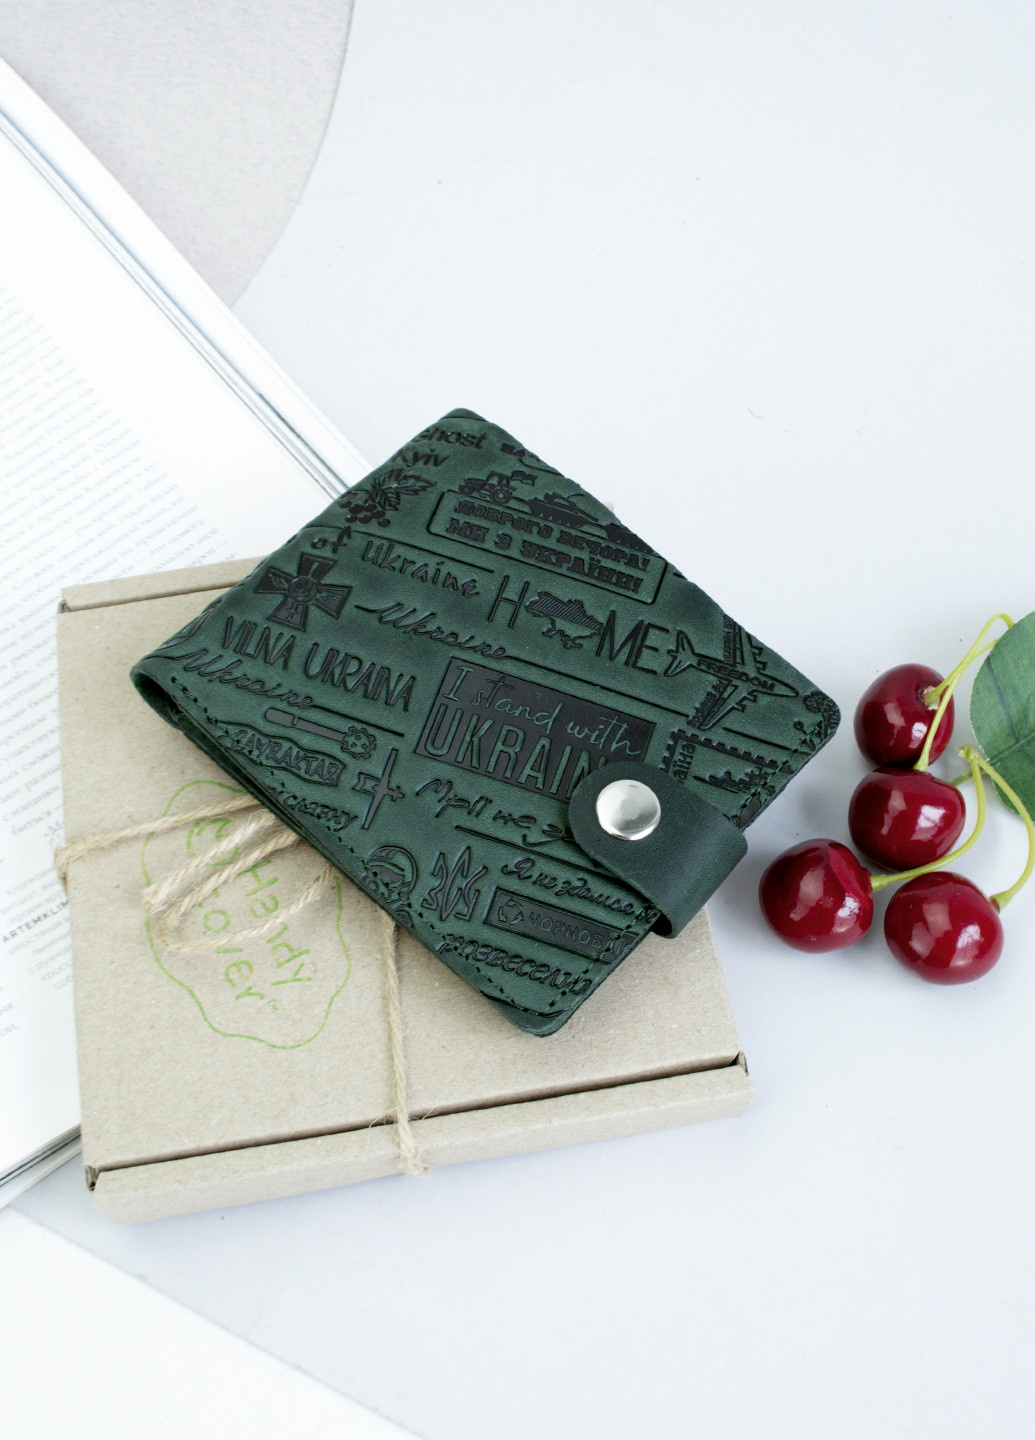 Подарочный набор №56 "Ukraine" (зеленый) в коробке: обложка на паспорт + портмоне HandyCover (253595746)